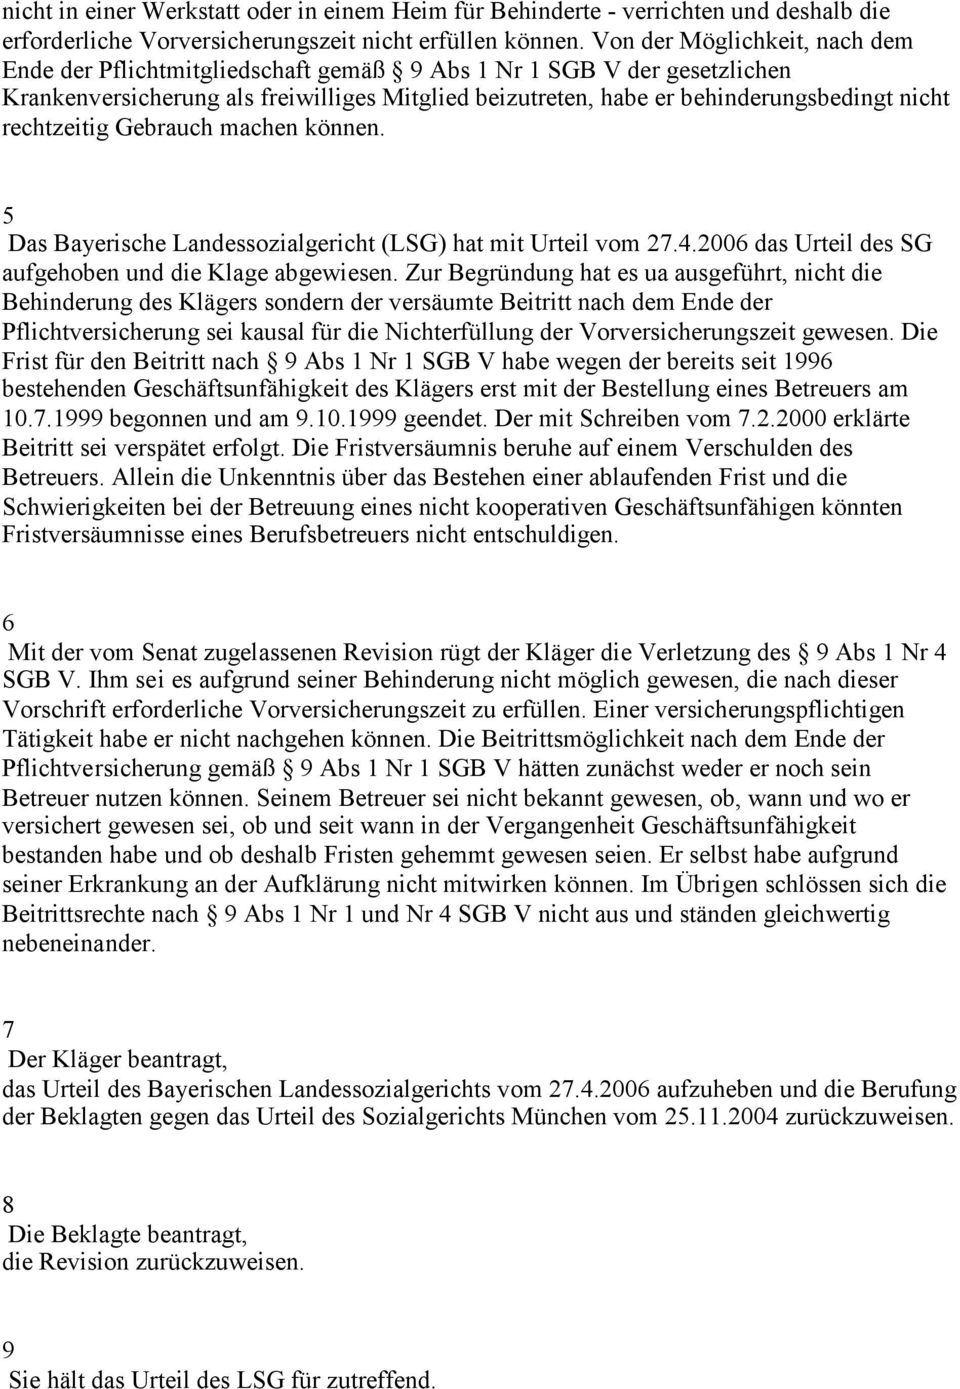 rechtzeitig Gebrauch machen können. 5 Das Bayerische Landessozialgericht (LSG) hat mit Urteil vom 27.4.2006 das Urteil des SG aufgehoben und die Klage abgewiesen.